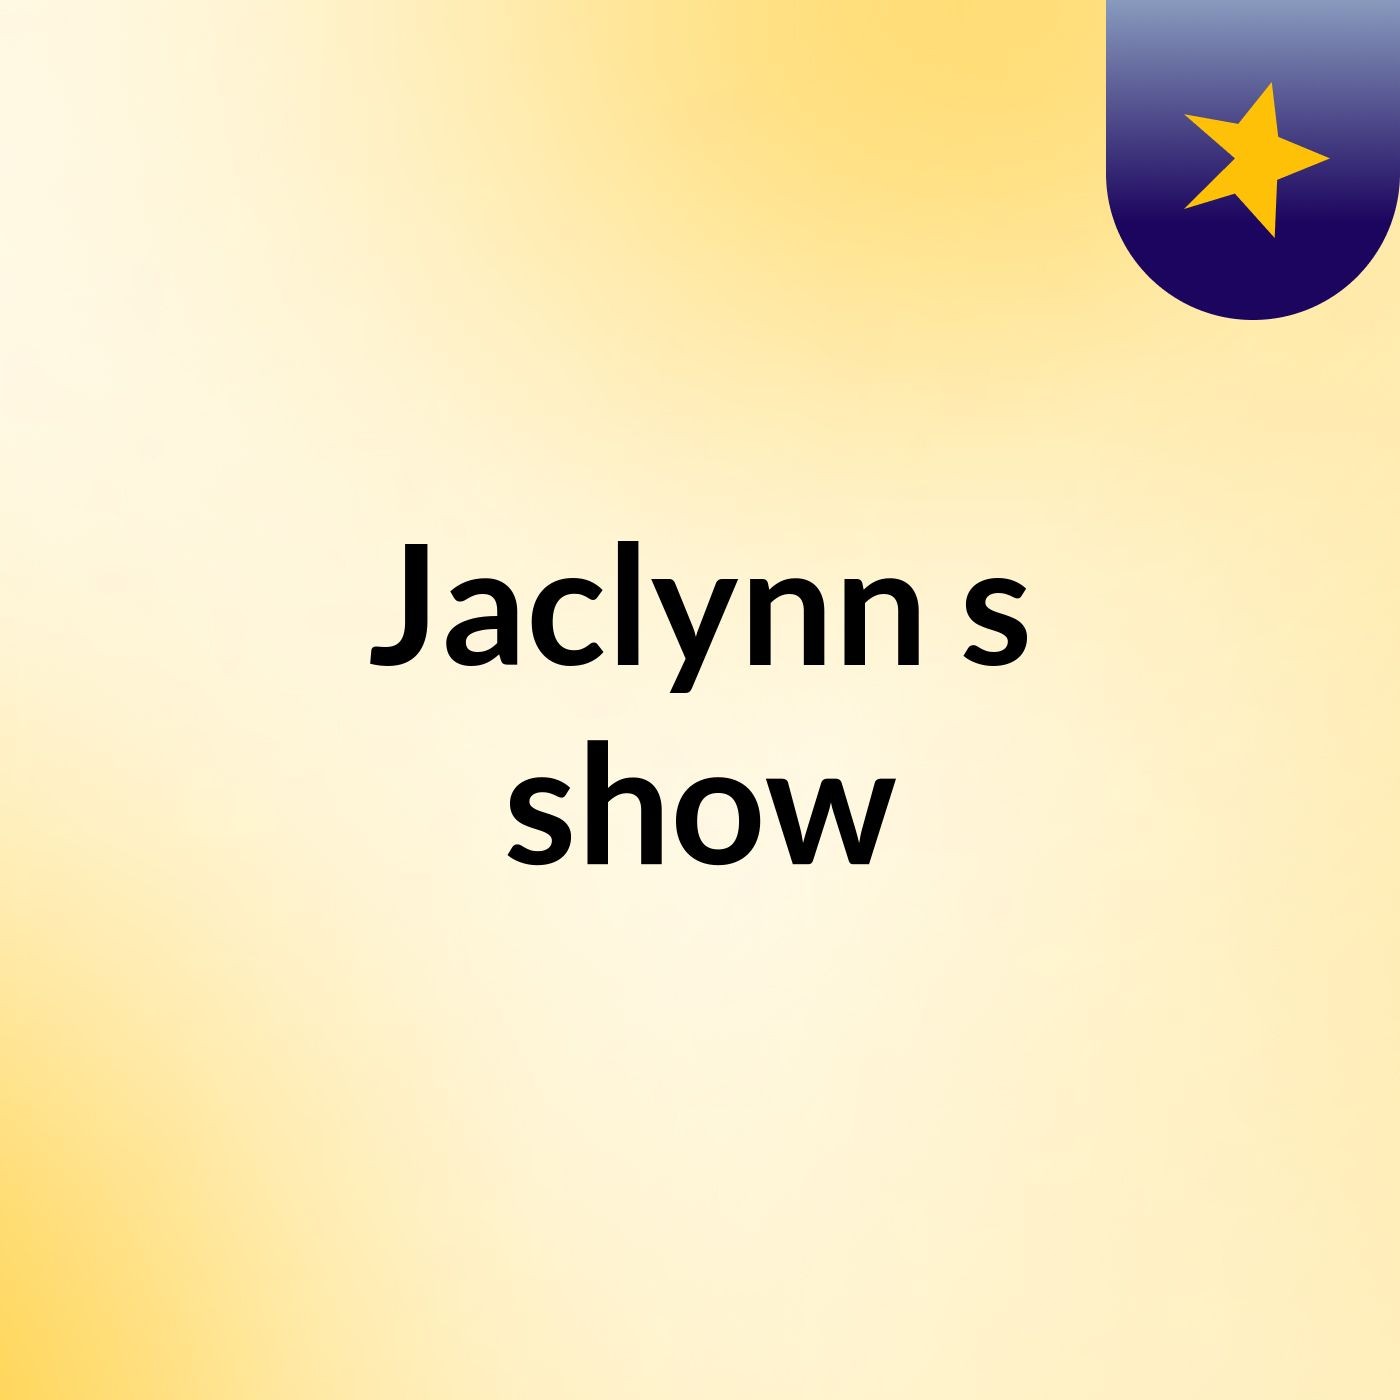 Jaclynn's show